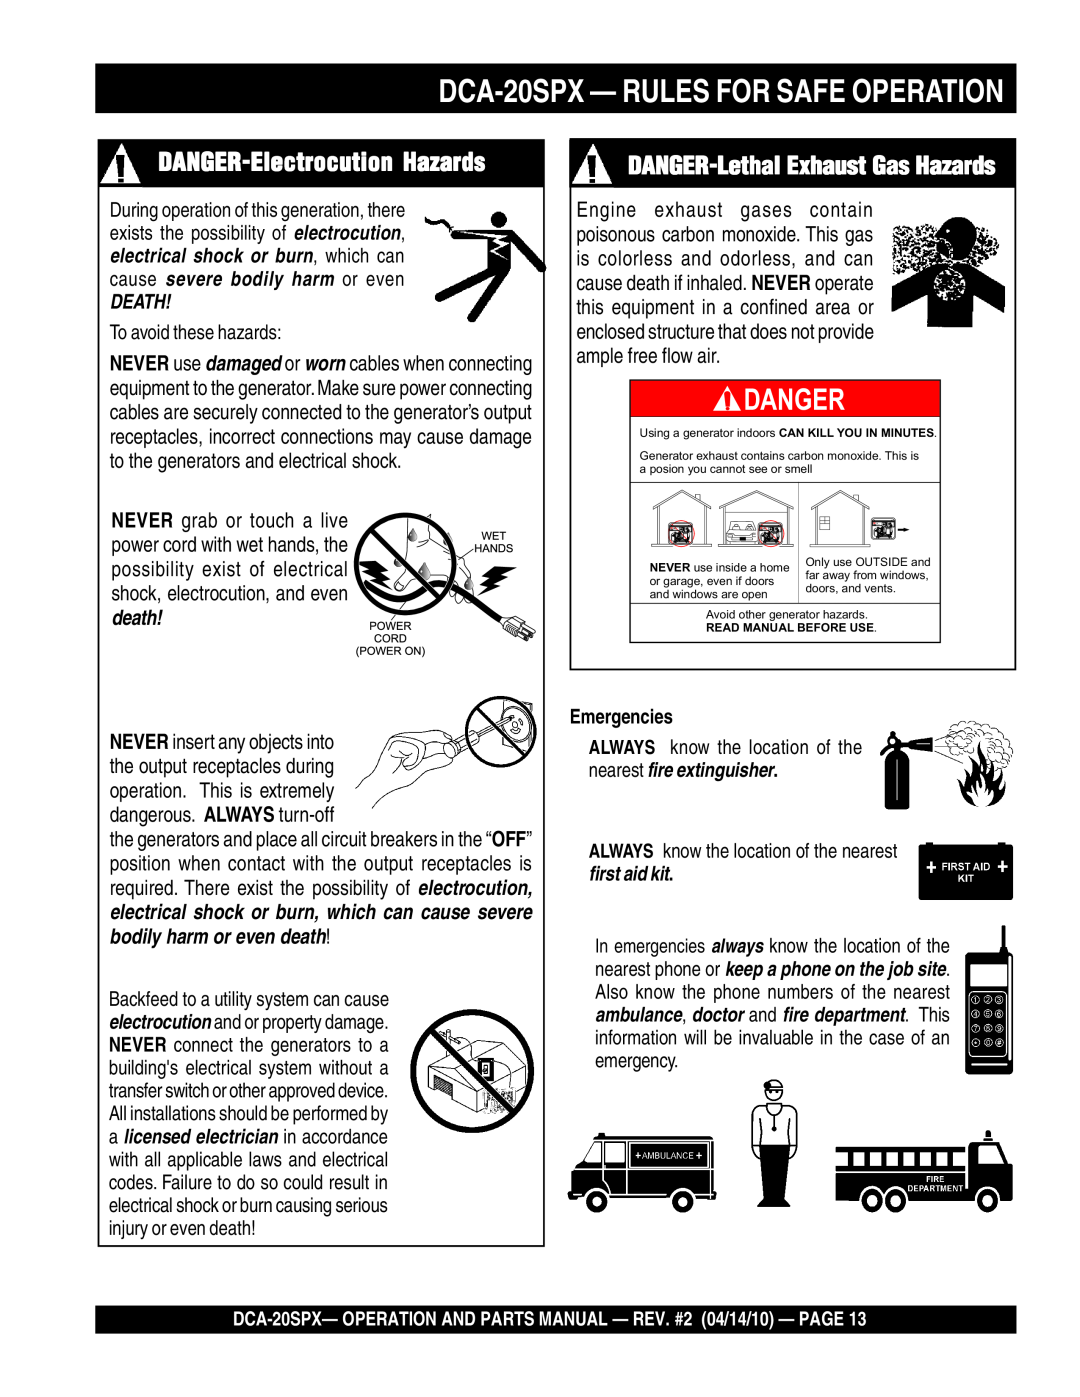 Multiquip DANGER-Electrocution Hazards, DANGER-Lethal Exhaust Gas Hazards, DCA-20SPX - RULES FOR SAFE OPERATION, Danger 